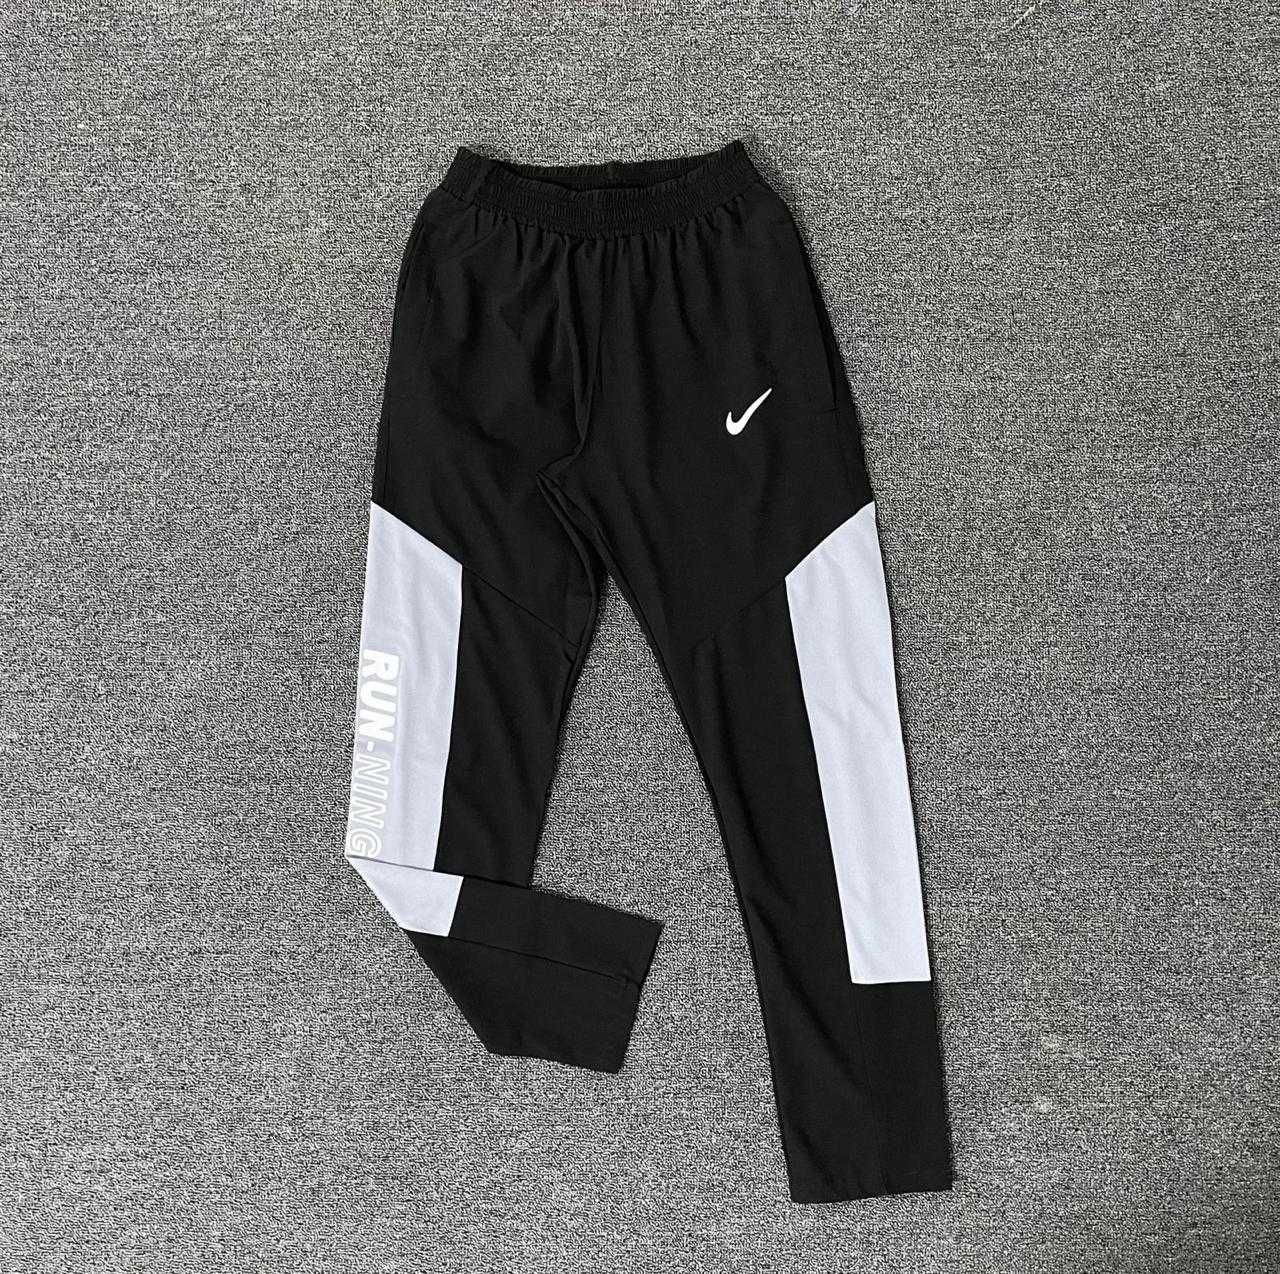 Спортивные штаны Nike, трико (2694) мужские